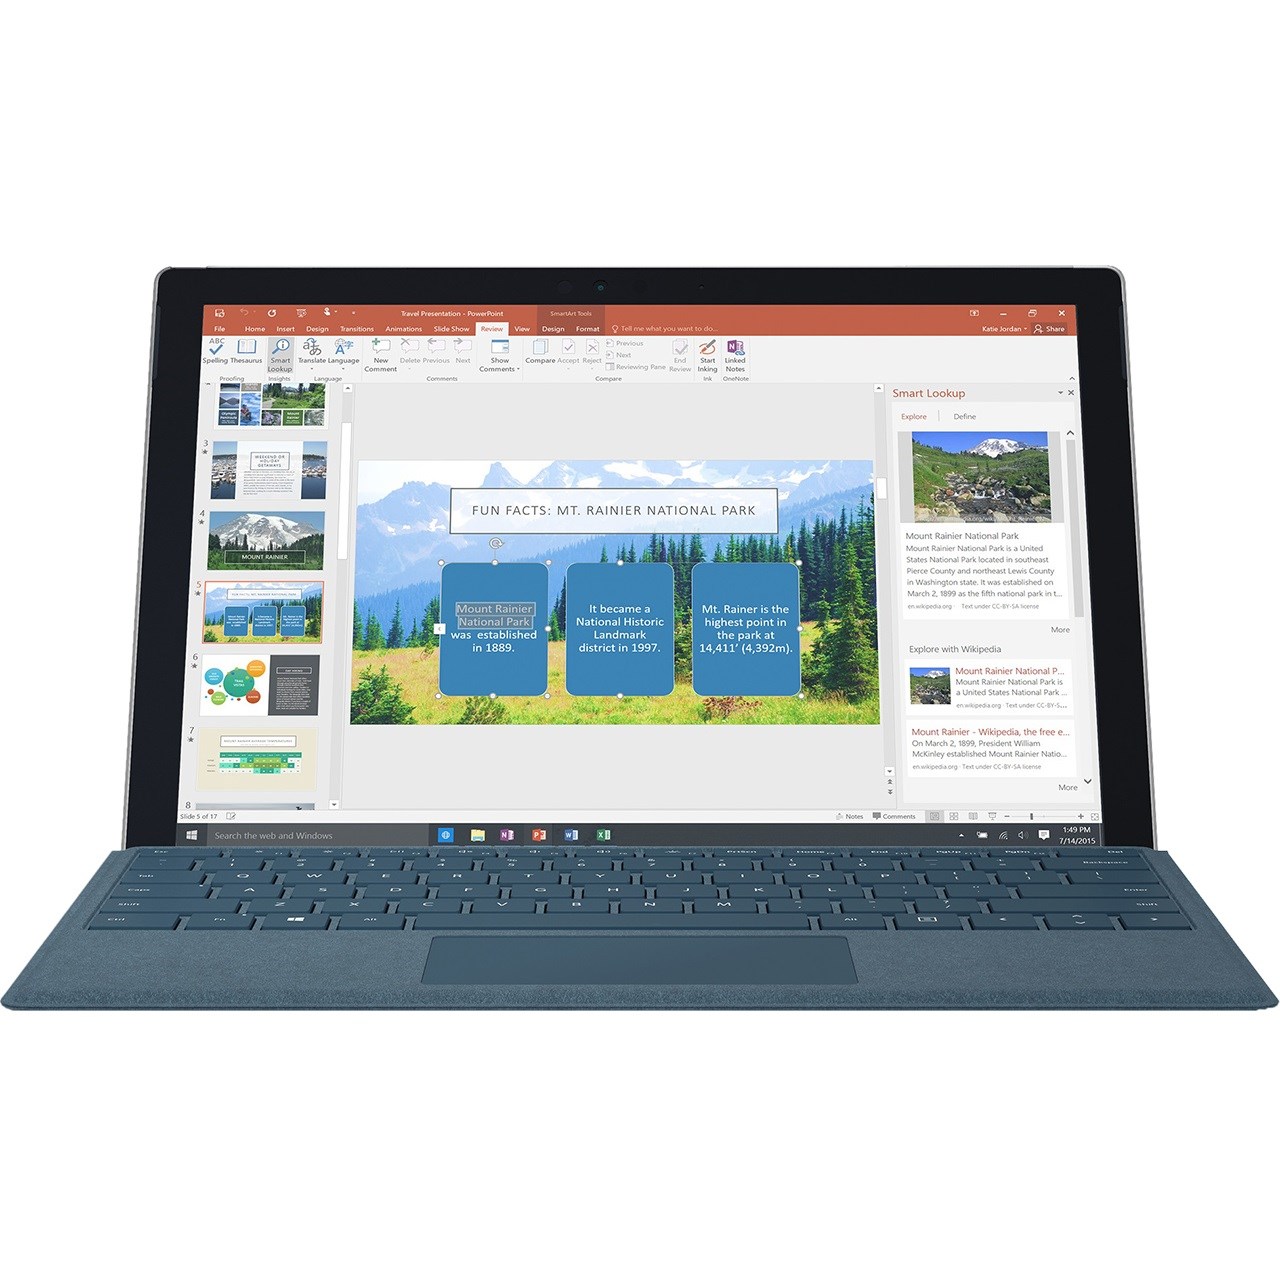 تبلت مایکروسافت مدل Surface Pro 2017 - C به همراه کیبورد سیگنیچر رنگ آبی کبالت و کیف چرم صنوبر  - ظرفیت 256 گیگابایت